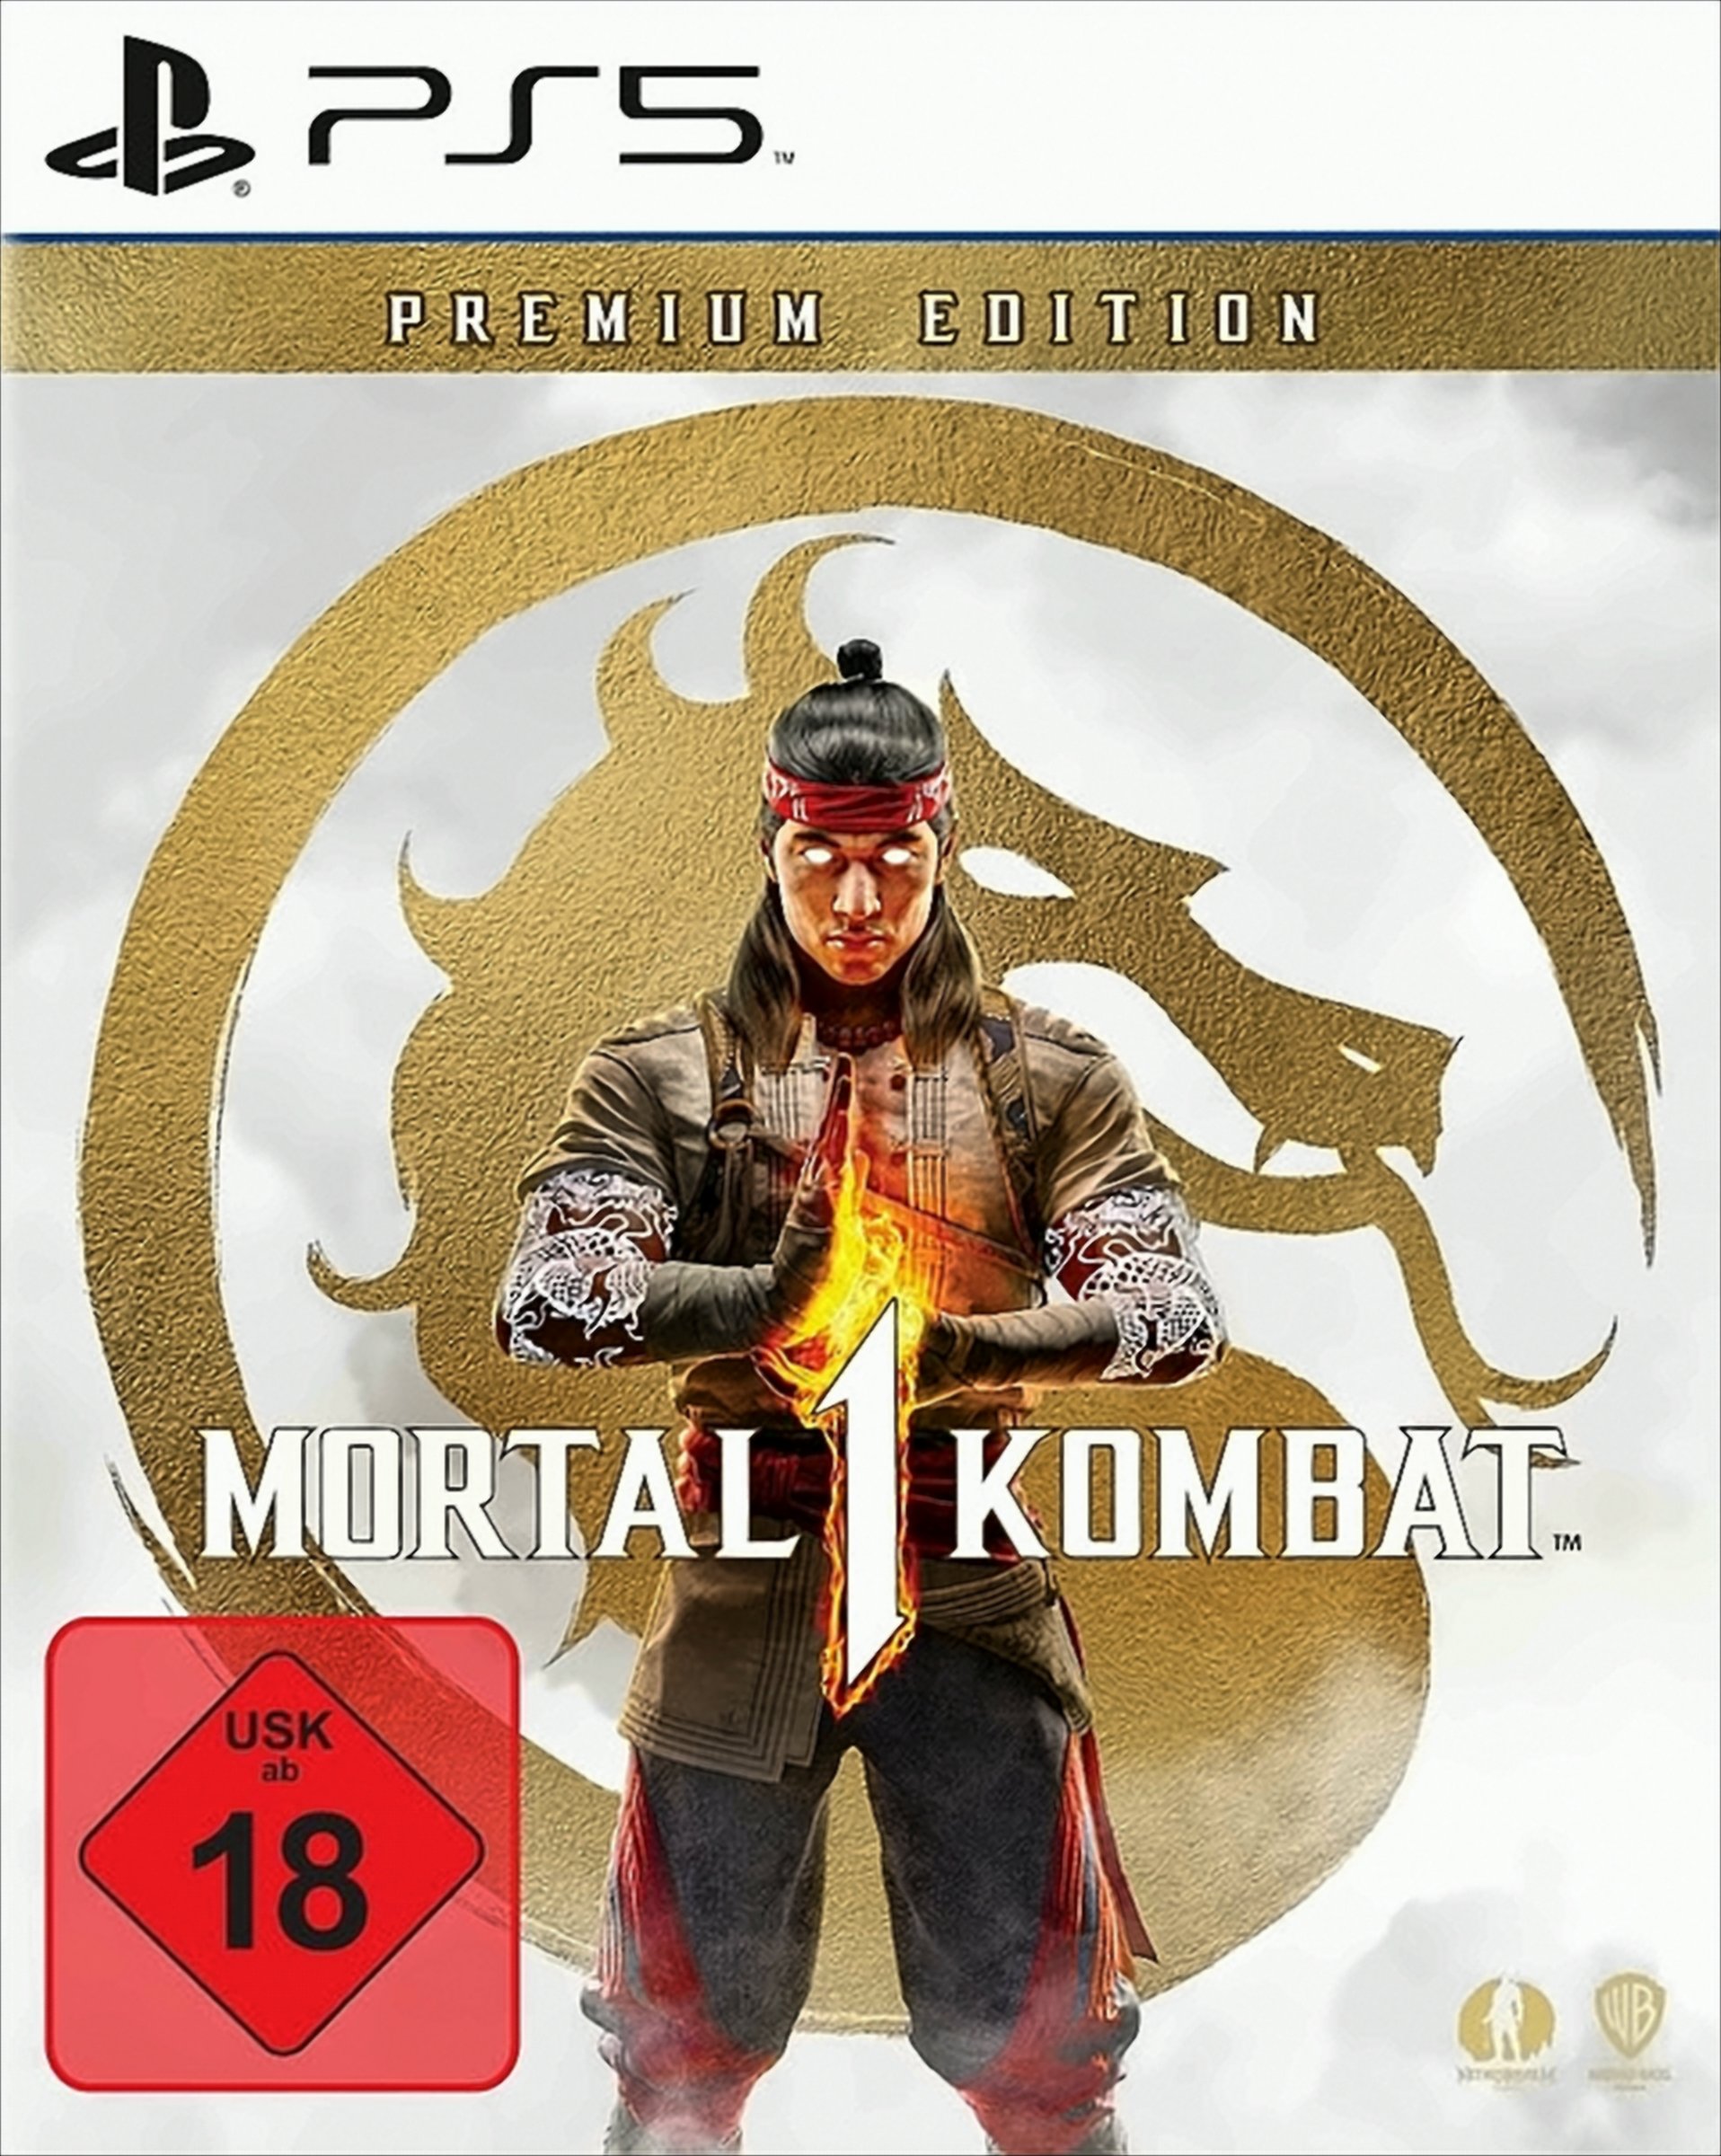 Mortal Kombat 1 Premium Edition (PS5) (USK) von Warner Bros. Entertainment UK Limit